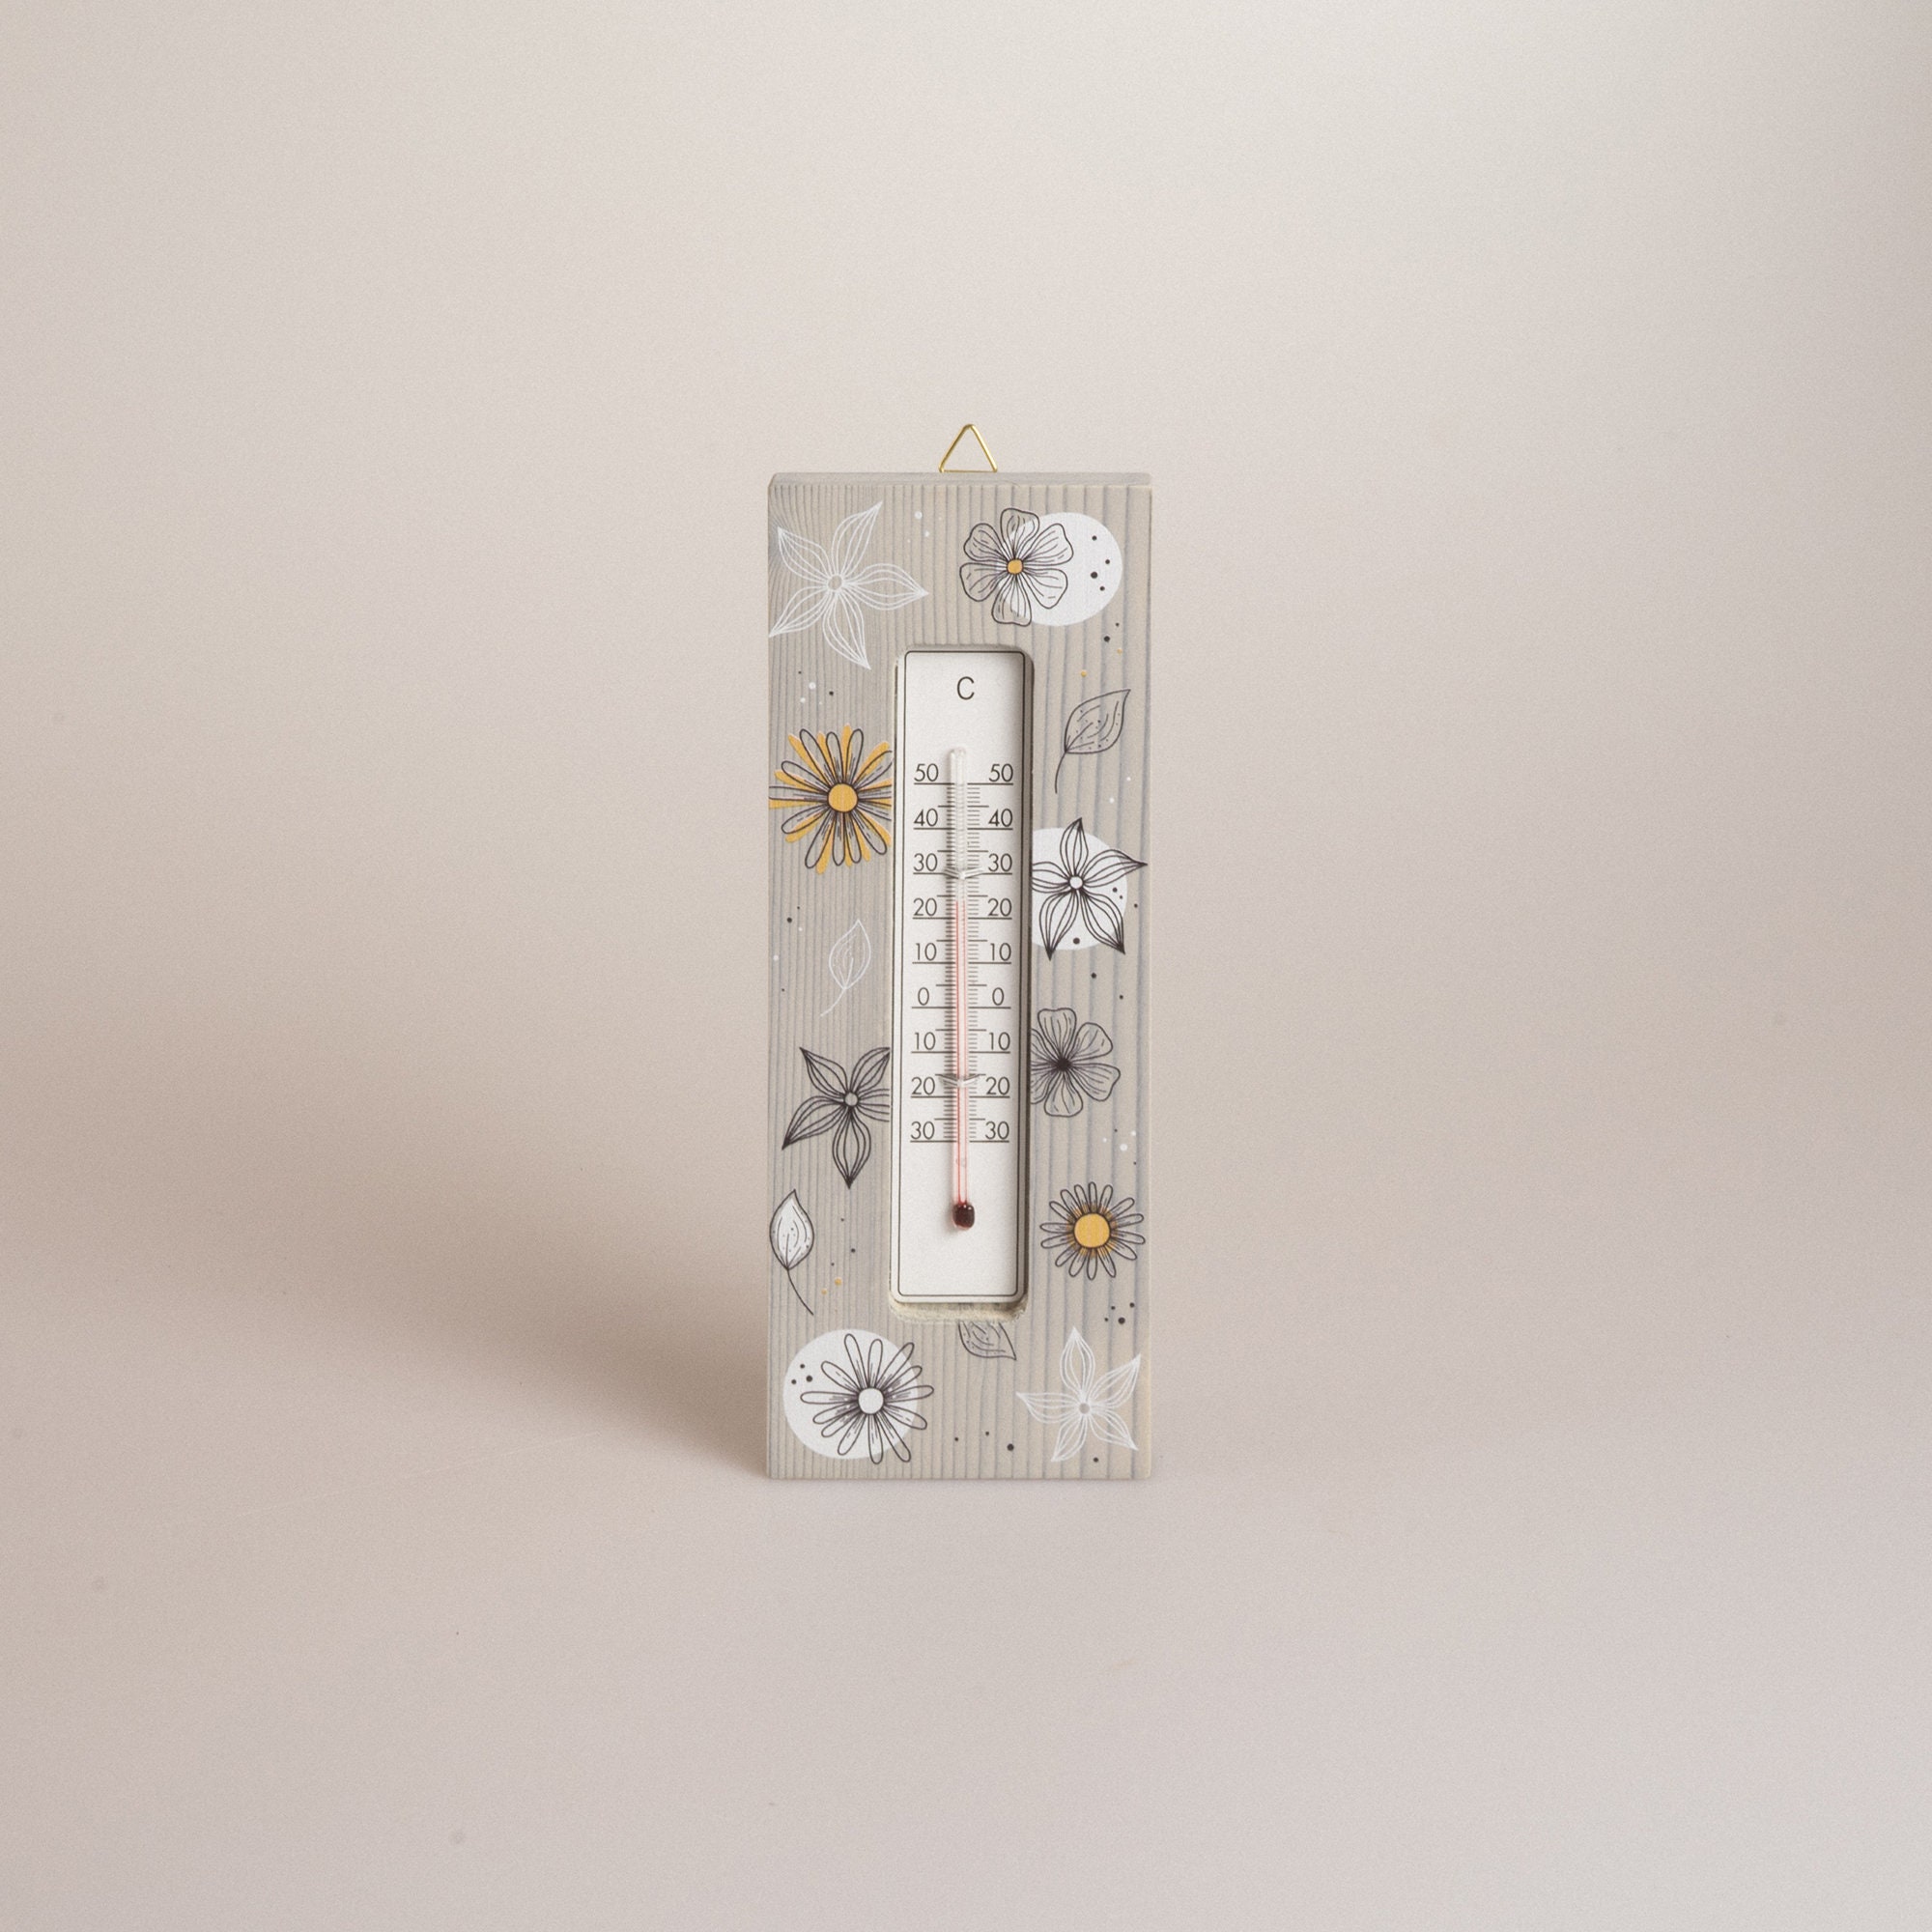 Analoge-Wetterstation, Regenmesser Thermometer als Gartenstecker